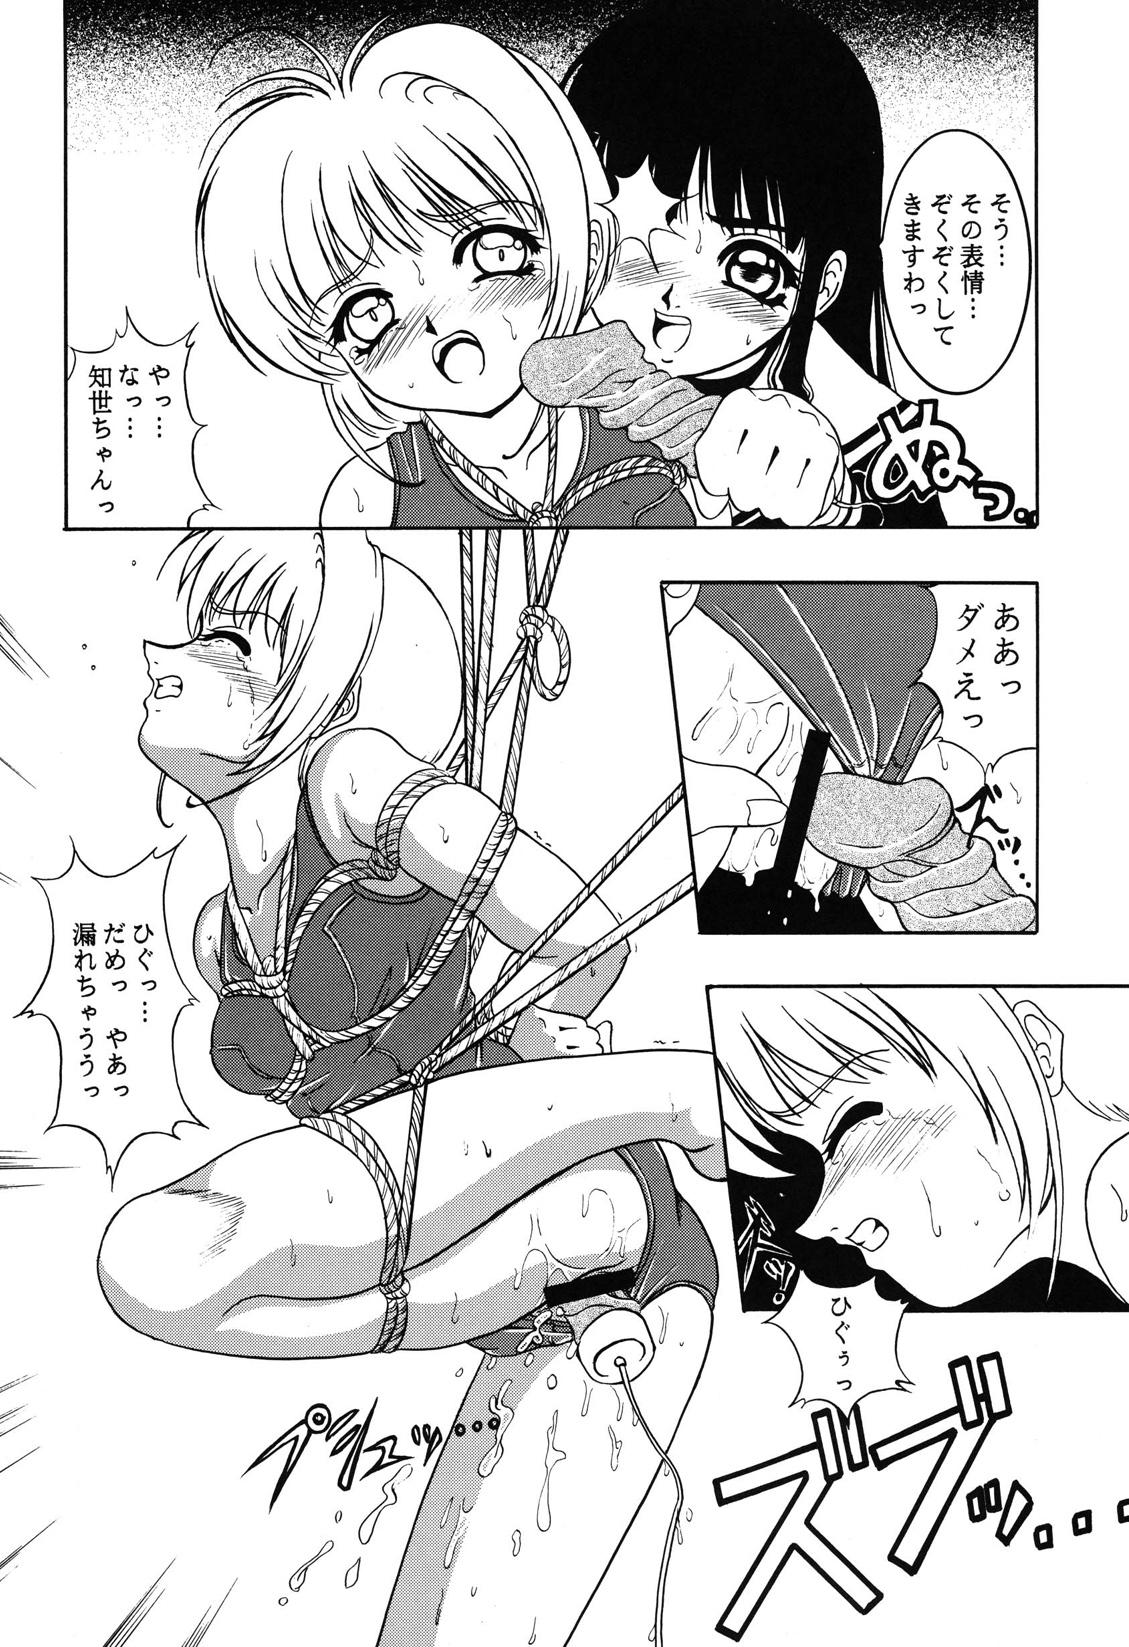 Squirters Hana ni Arashi no Rei hemo Aruzo - Cardcaptor sakura Pain - Page 10